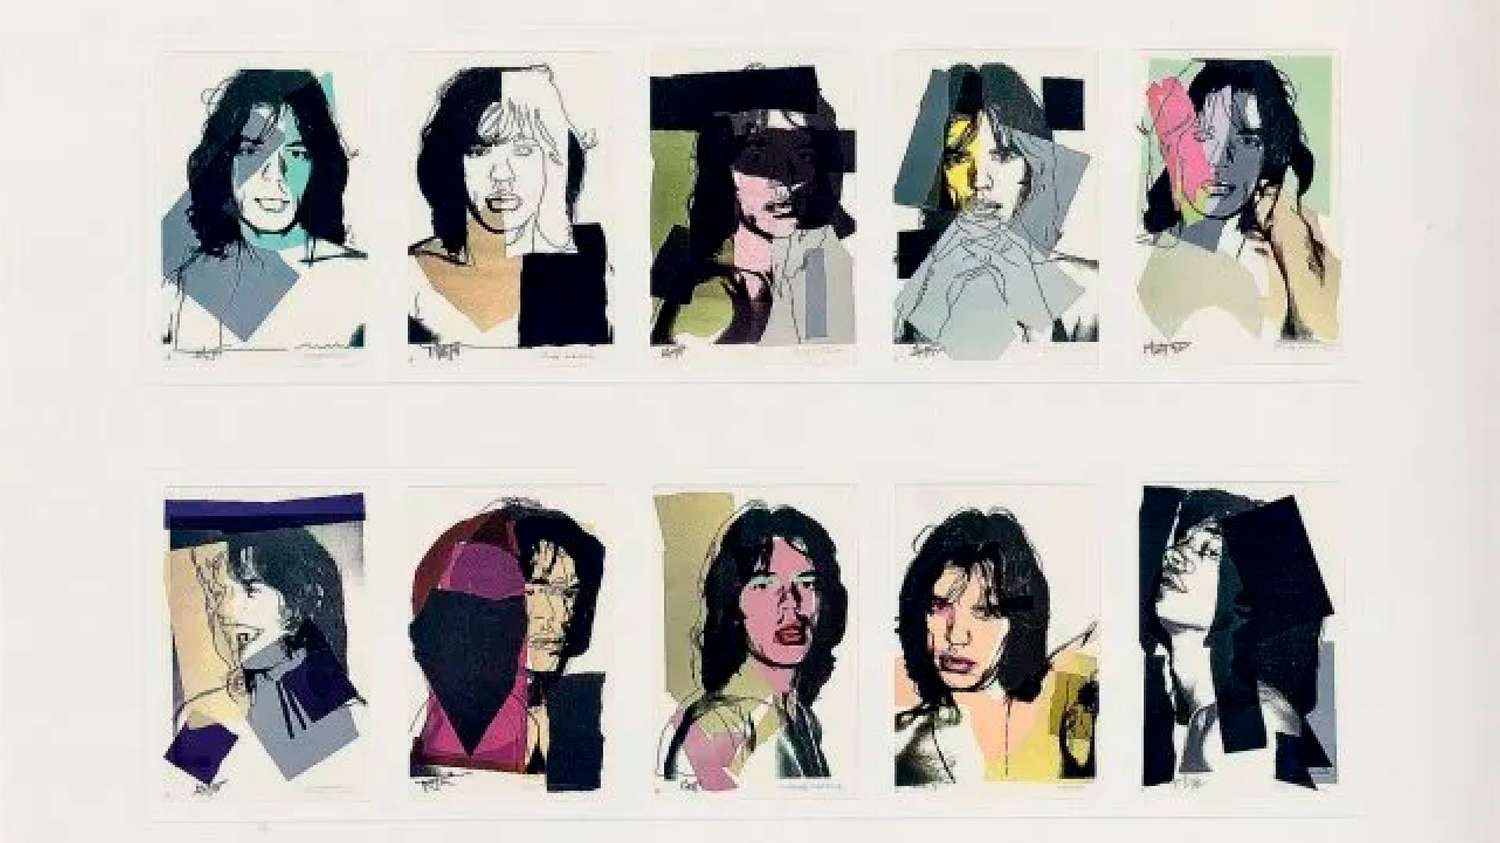 Un retrato de Mick Jagger realizado por Warhol dobló el valor de subasta ¿A cuánto se vendió?